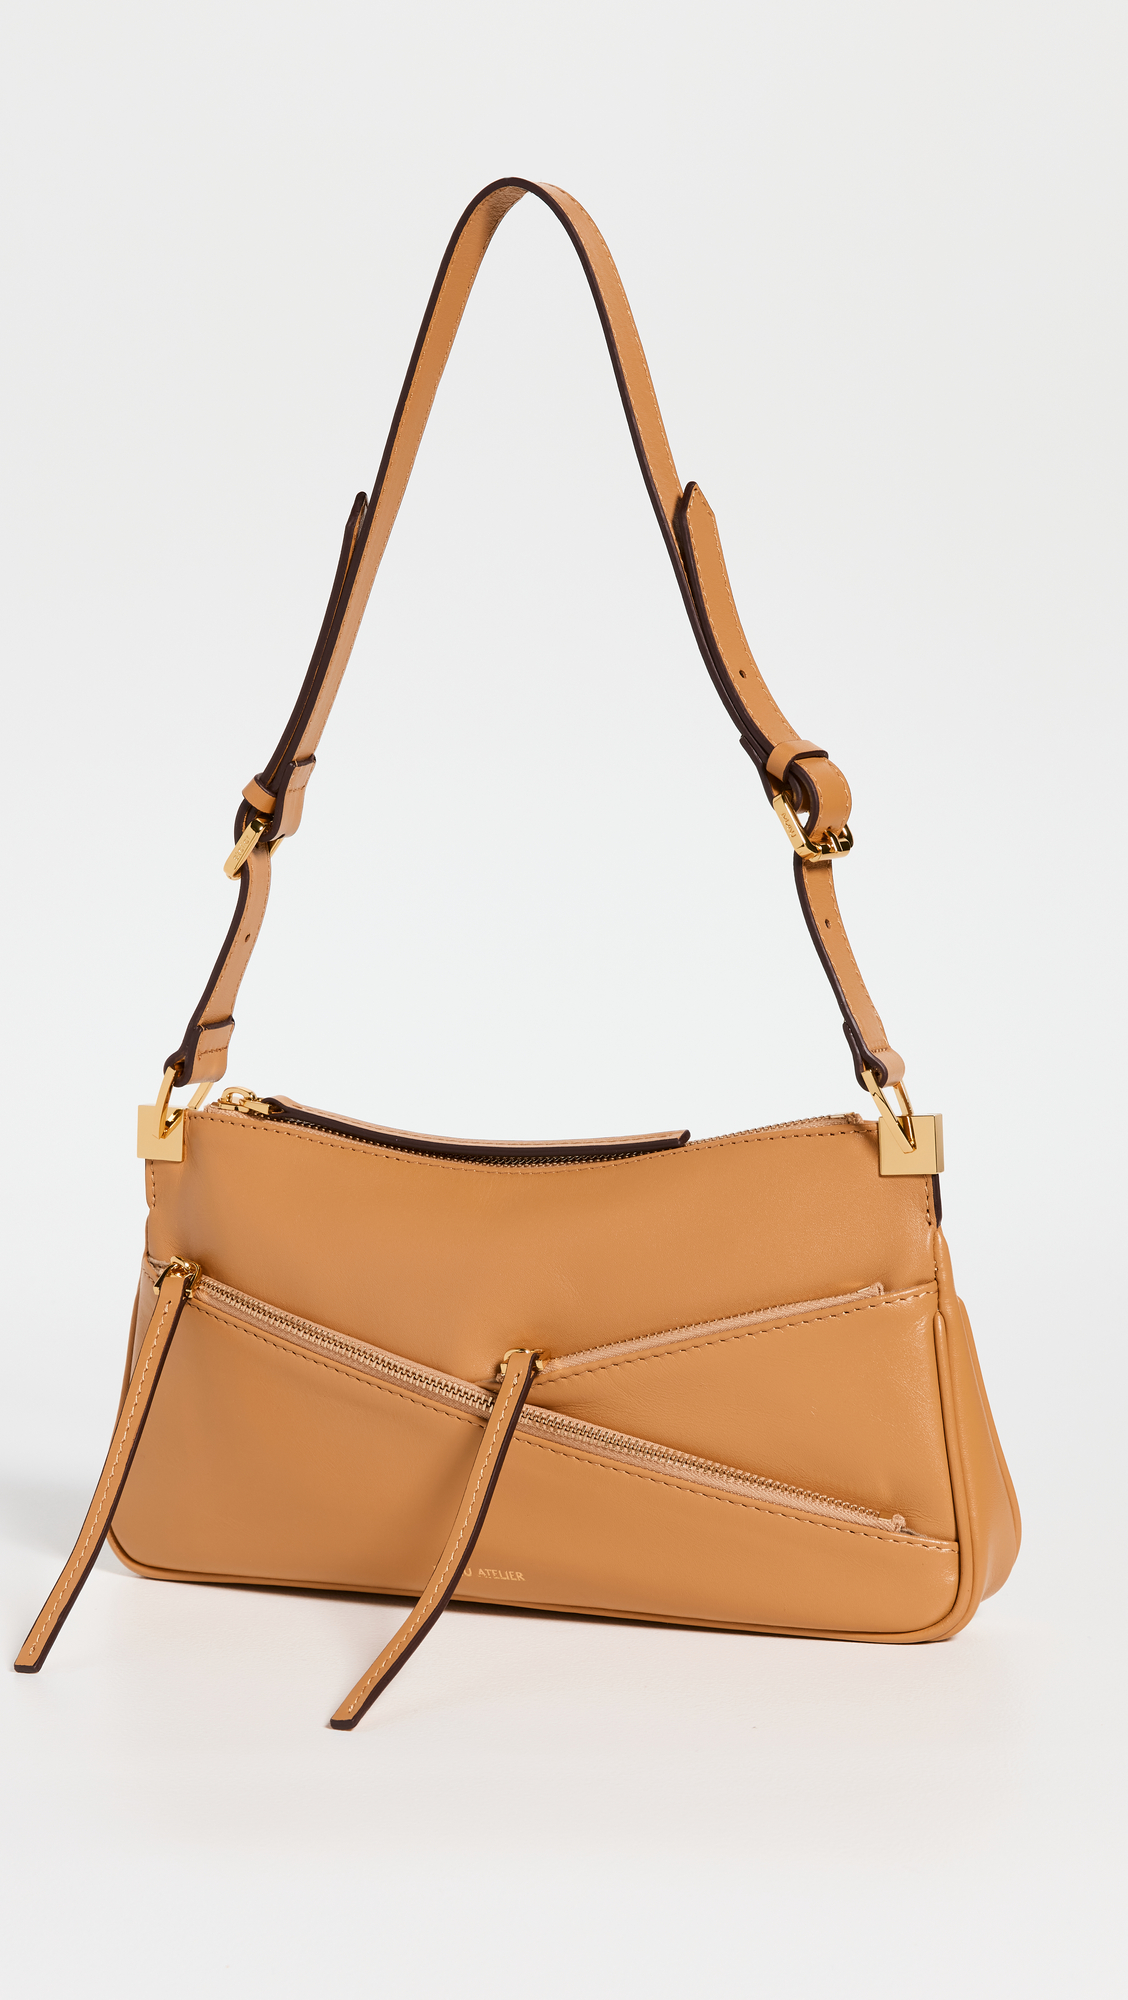 Best mid-range designer handbags – Best affordable designer bags